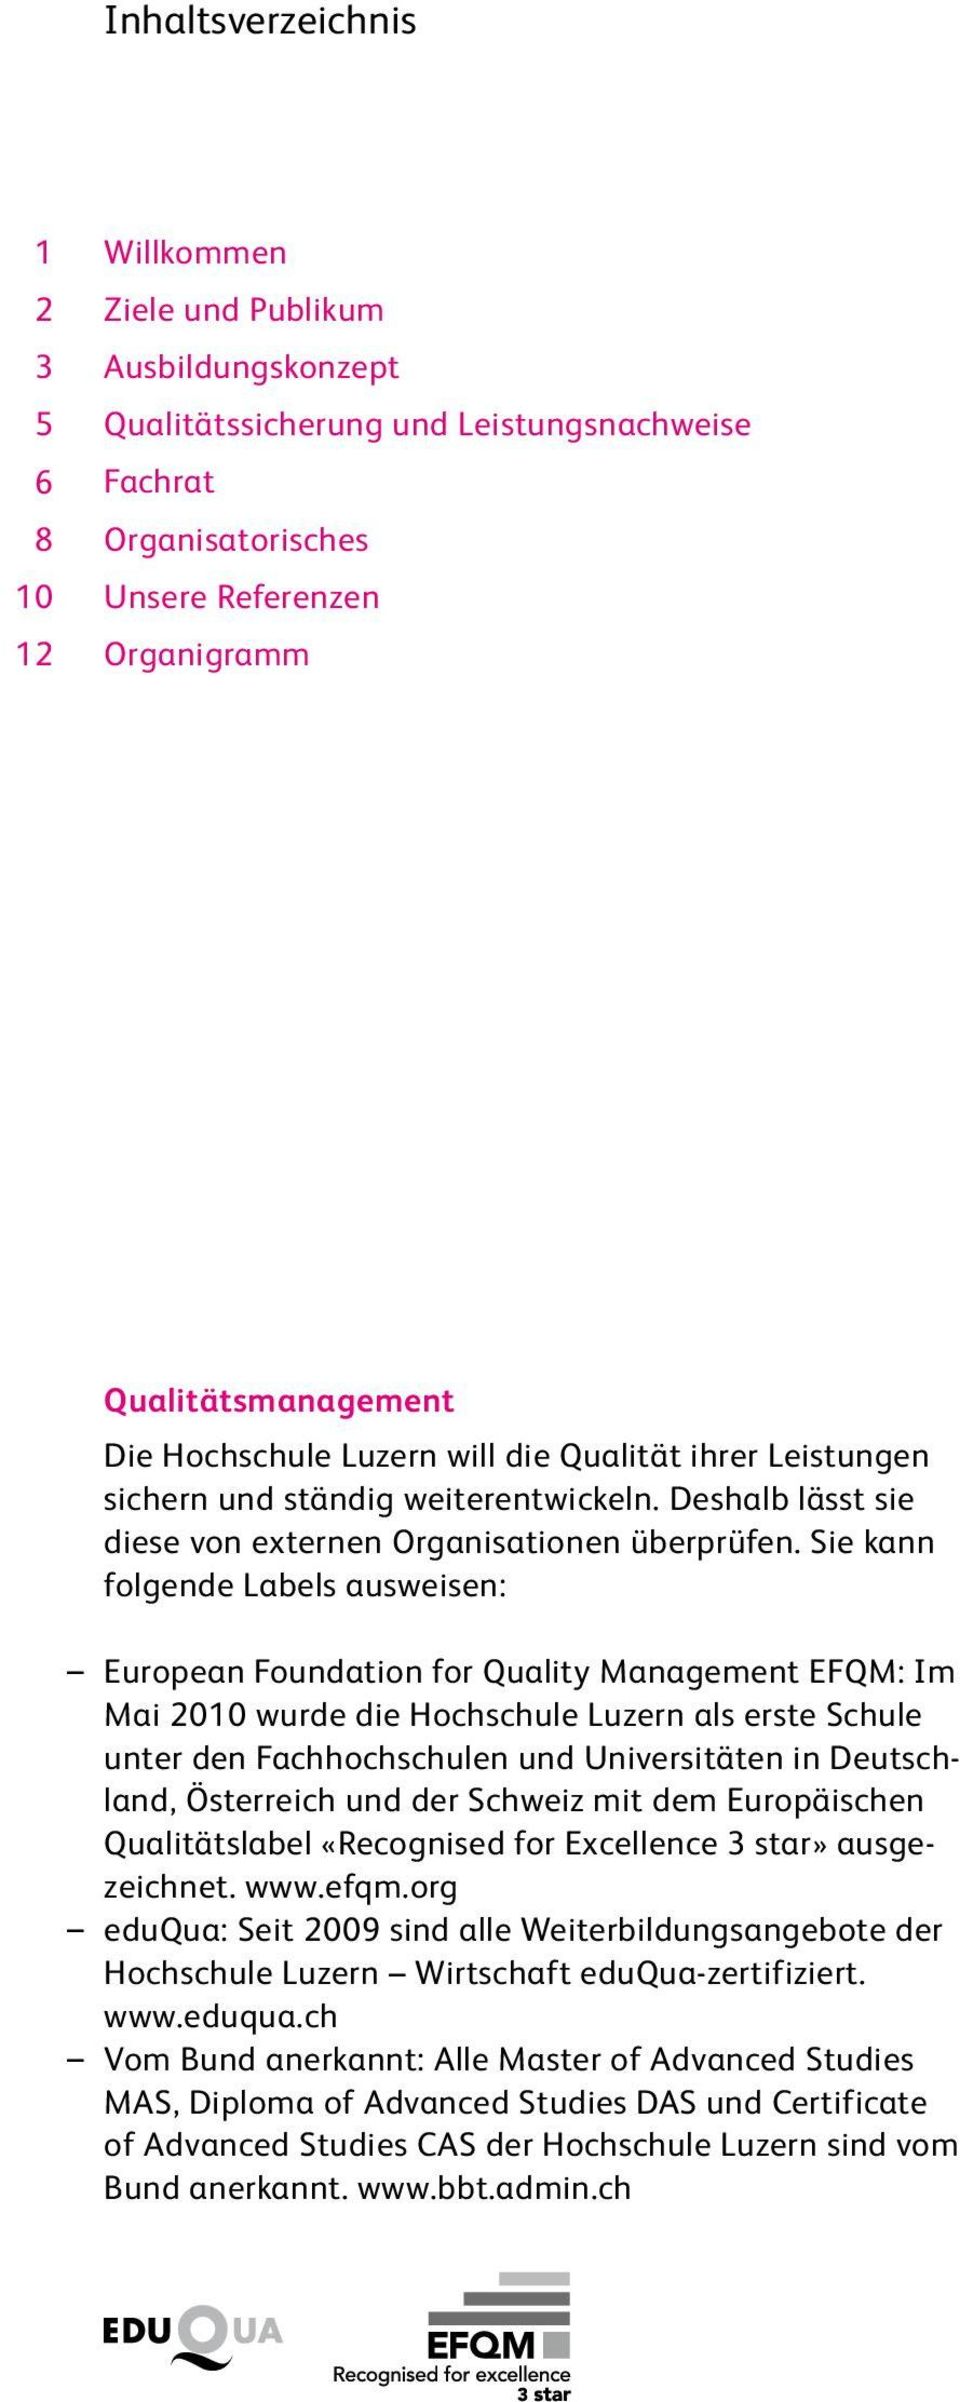 Sie kann folgende Labels ausweisen: European Foundation for Quality Management EFQM: Im Mai 2010 wurde die Hochschule Luzern als erste Schule unter den Fachhochschulen und Universitäten in